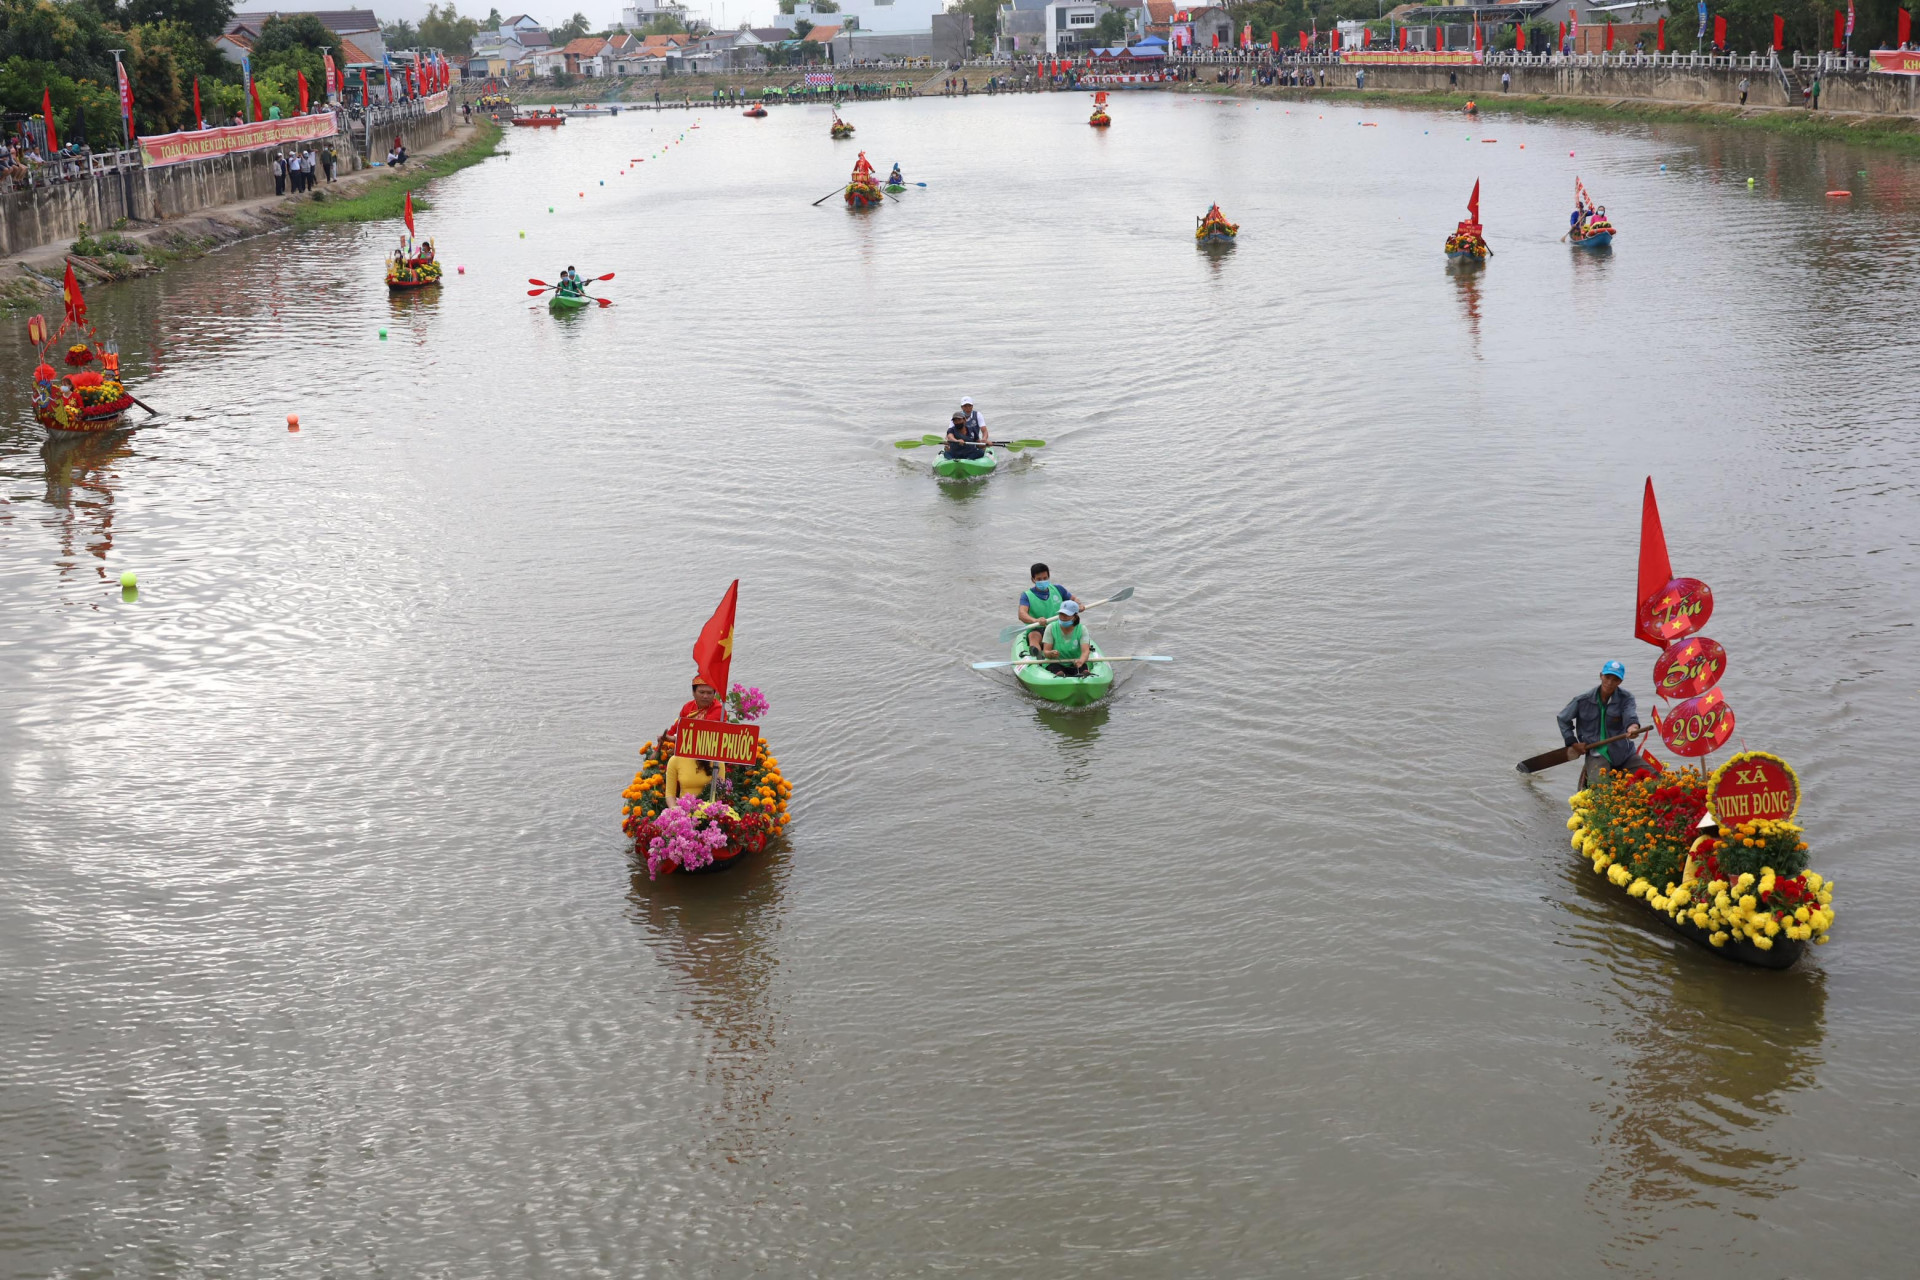 Khu vực sông diễn ra Lễ hội thuyền hoa và đua thuyền trên sông Dinh.  